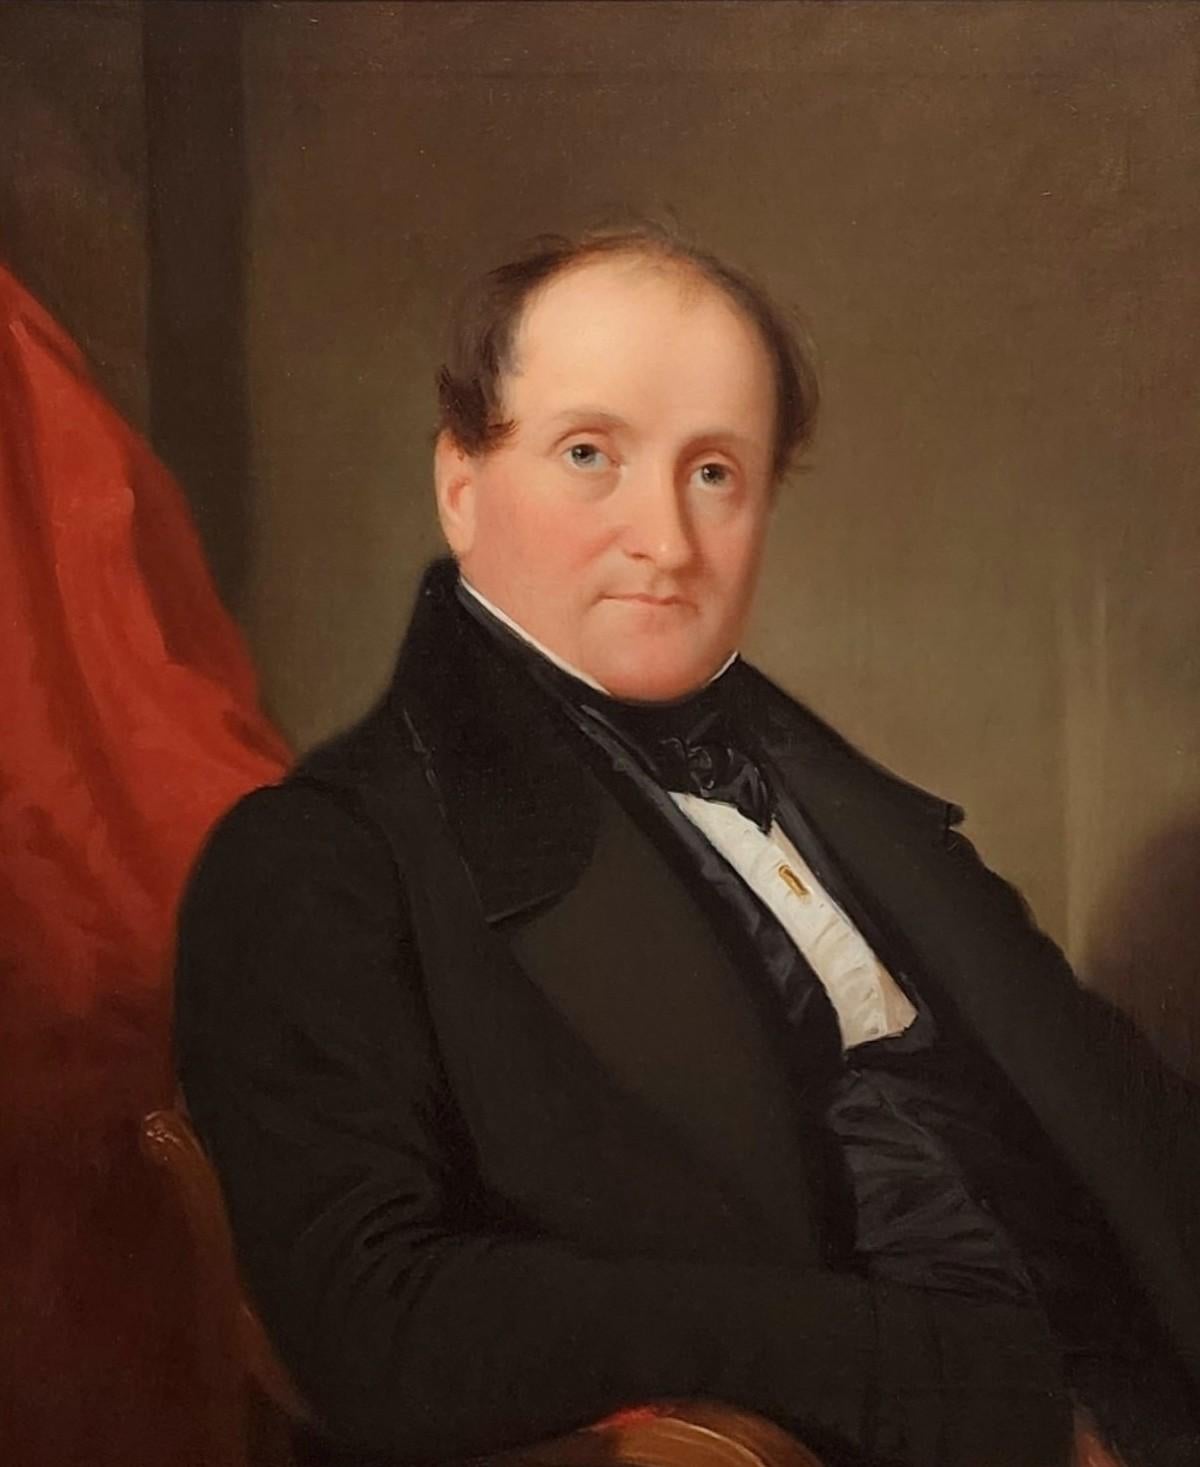 Portrait d'un gentleman, Early American Portraiture, 1830s Portrait d'un homme - Painting de John F Francis